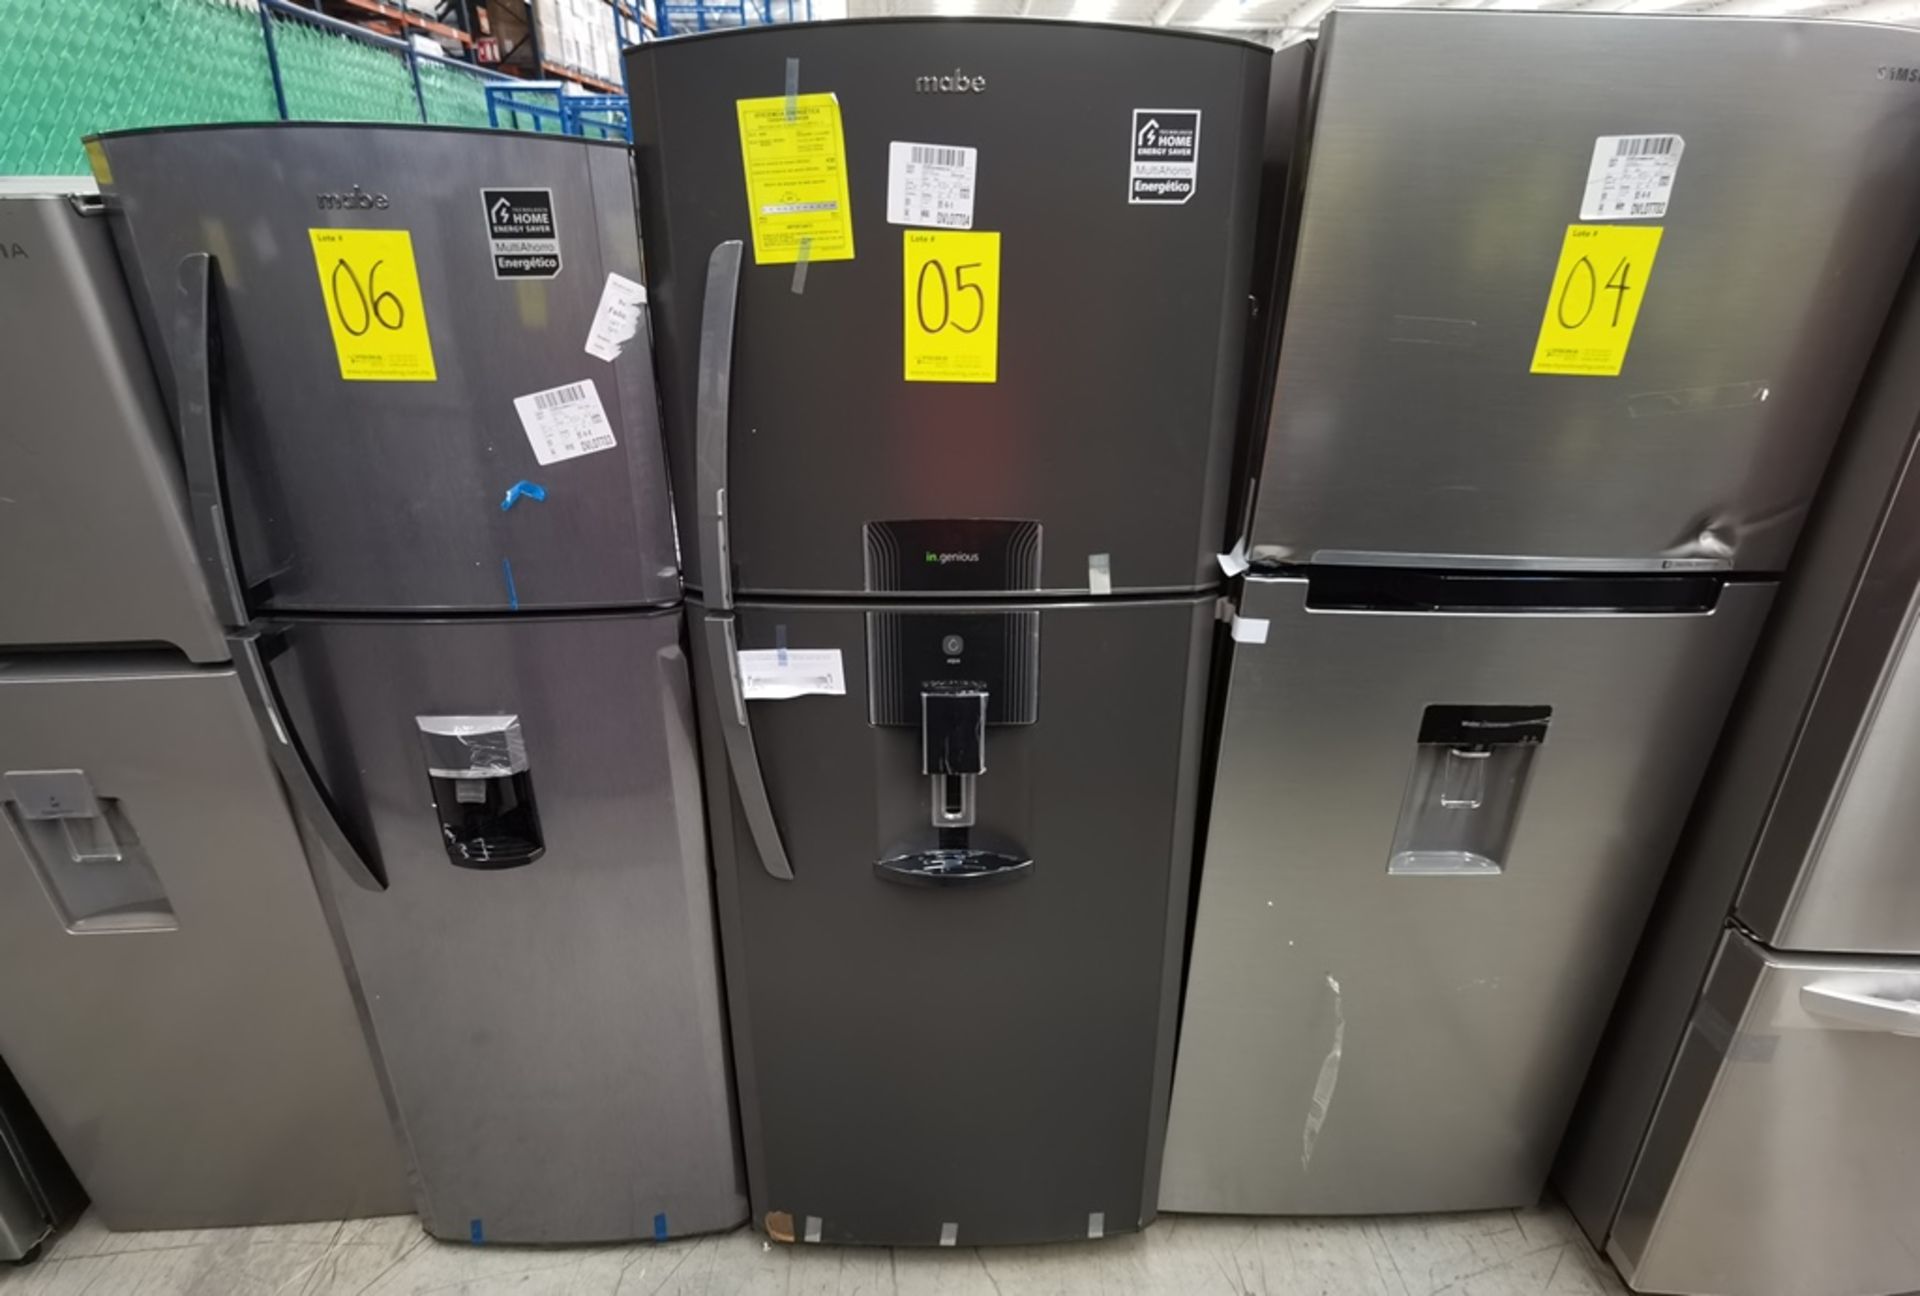 Lote De 2 Refrigeradores Contiene: 1 Refrigerador Marca Mabe, Modelo RME360FD, Serie 2205B503535, C